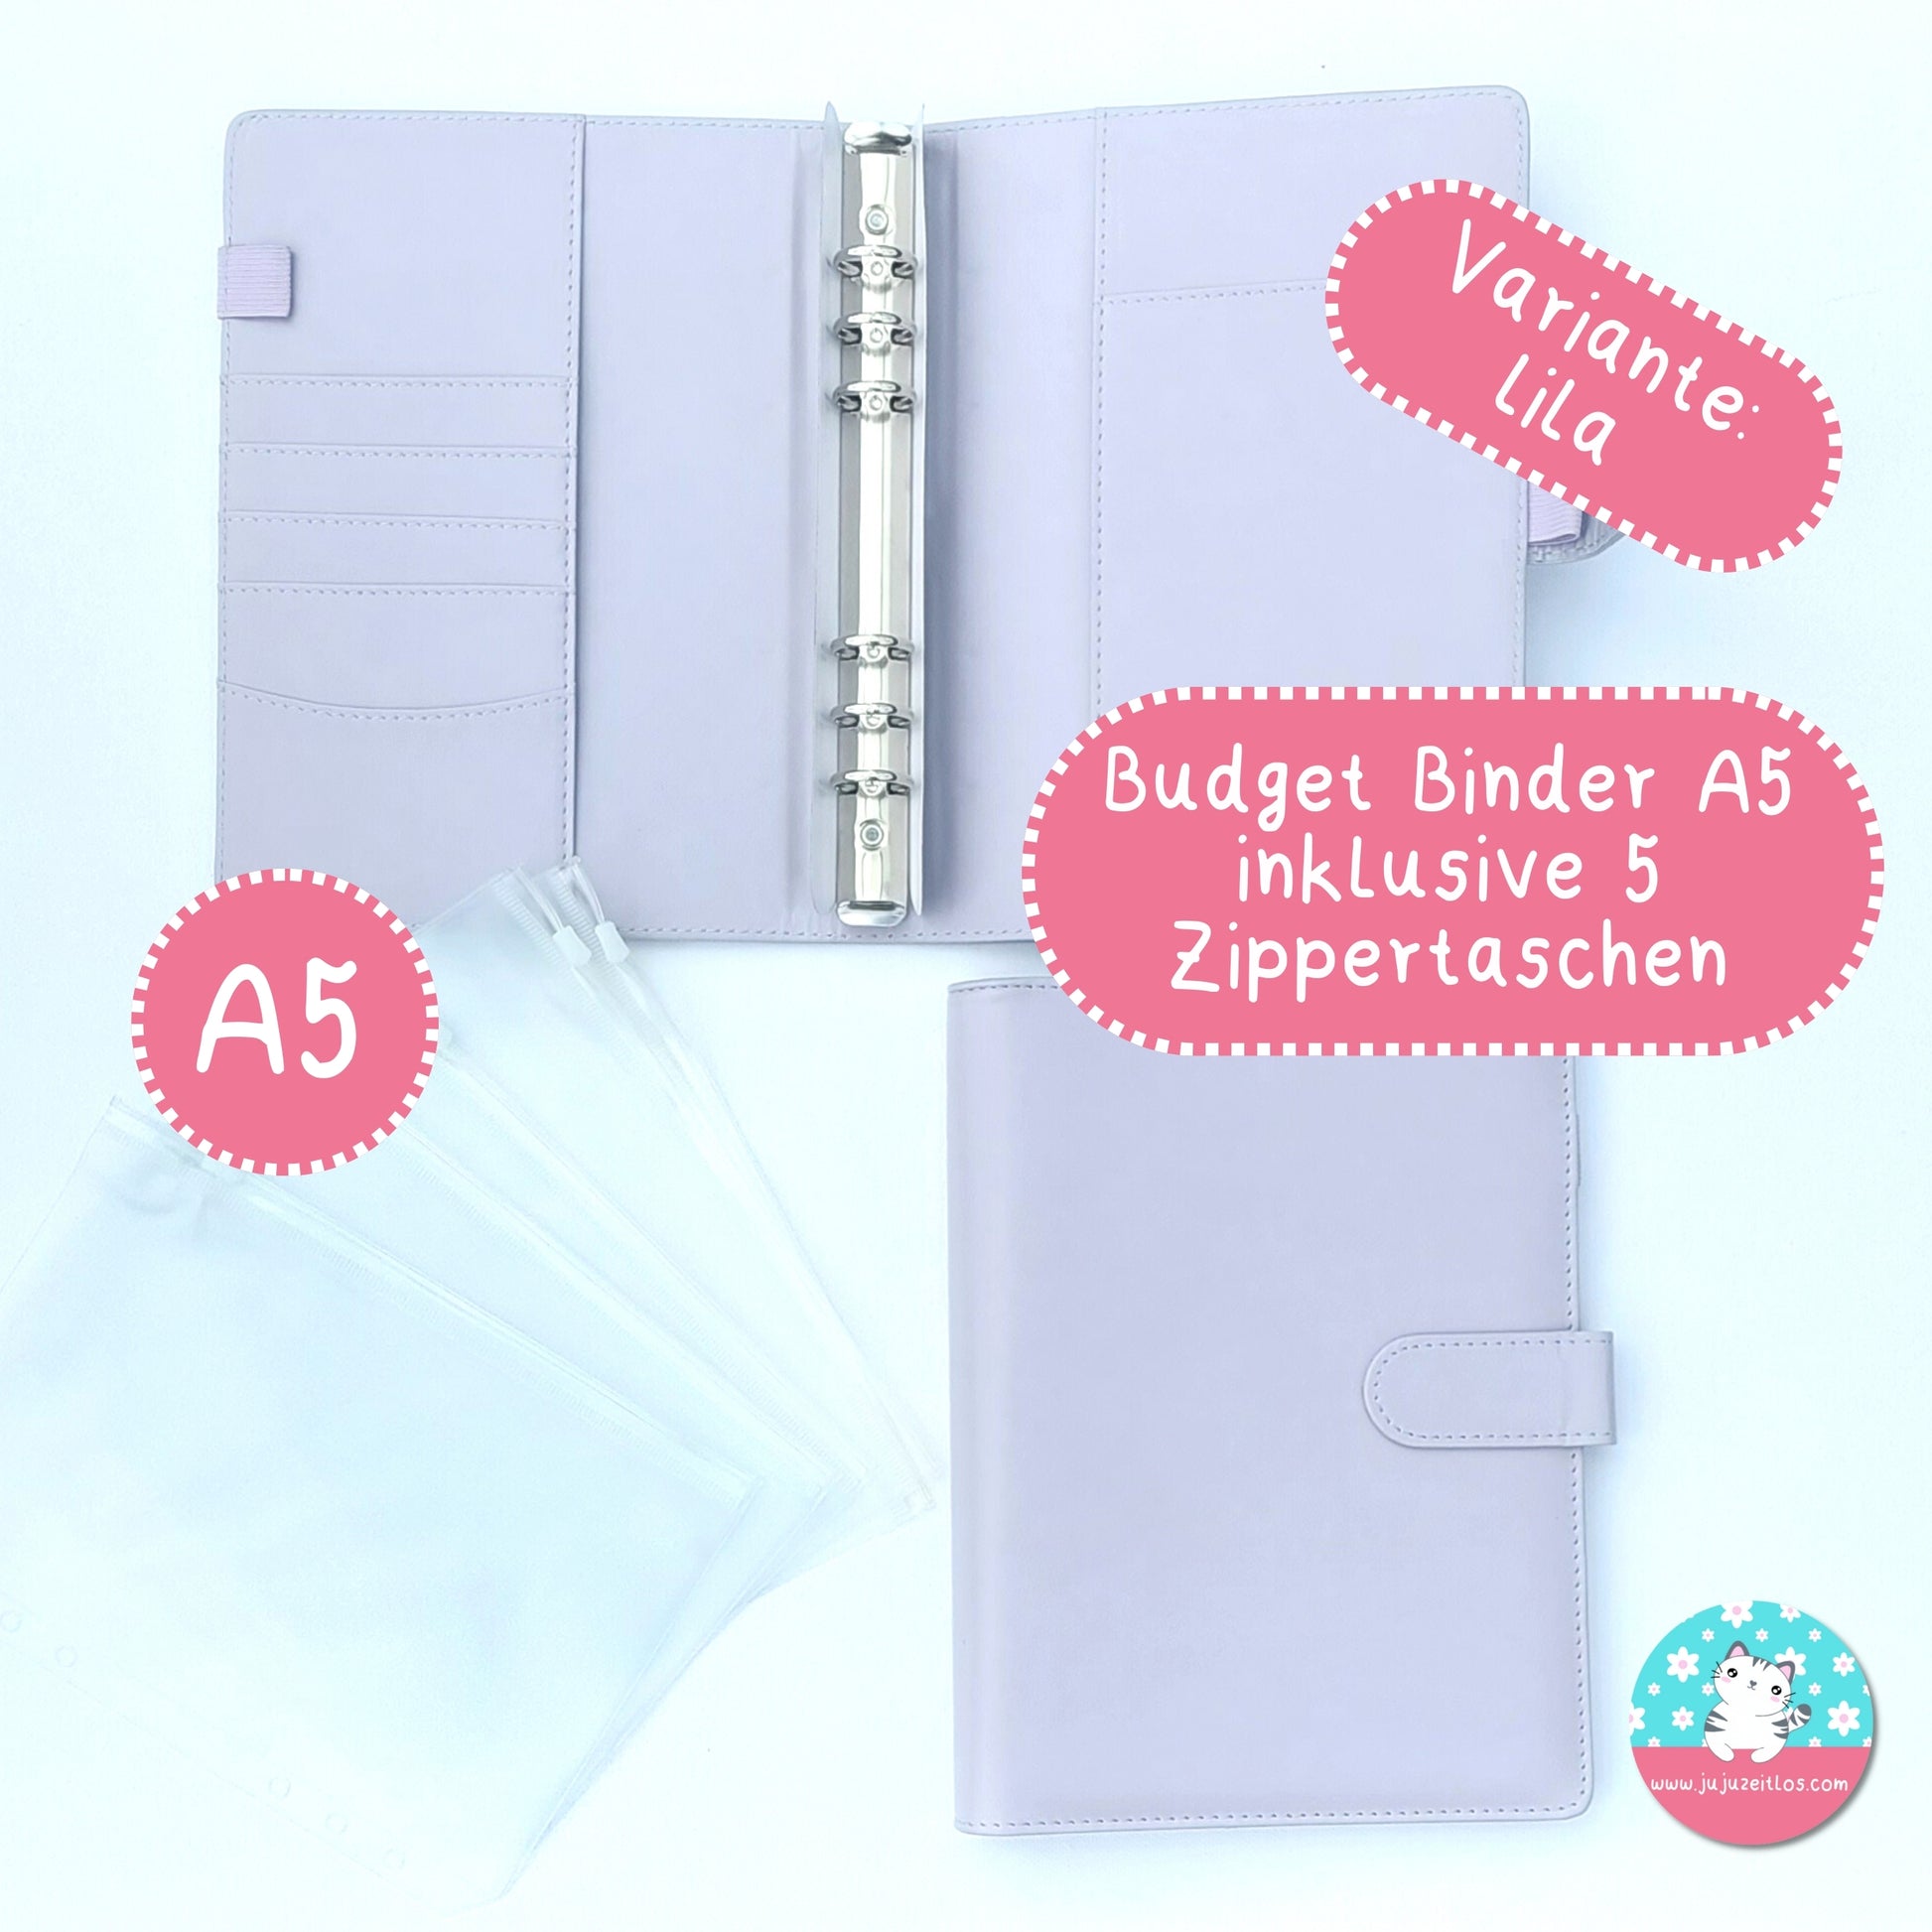 A5 Budget Binder ♡Binder & Zippertaschen♡ - JujuZeitlos